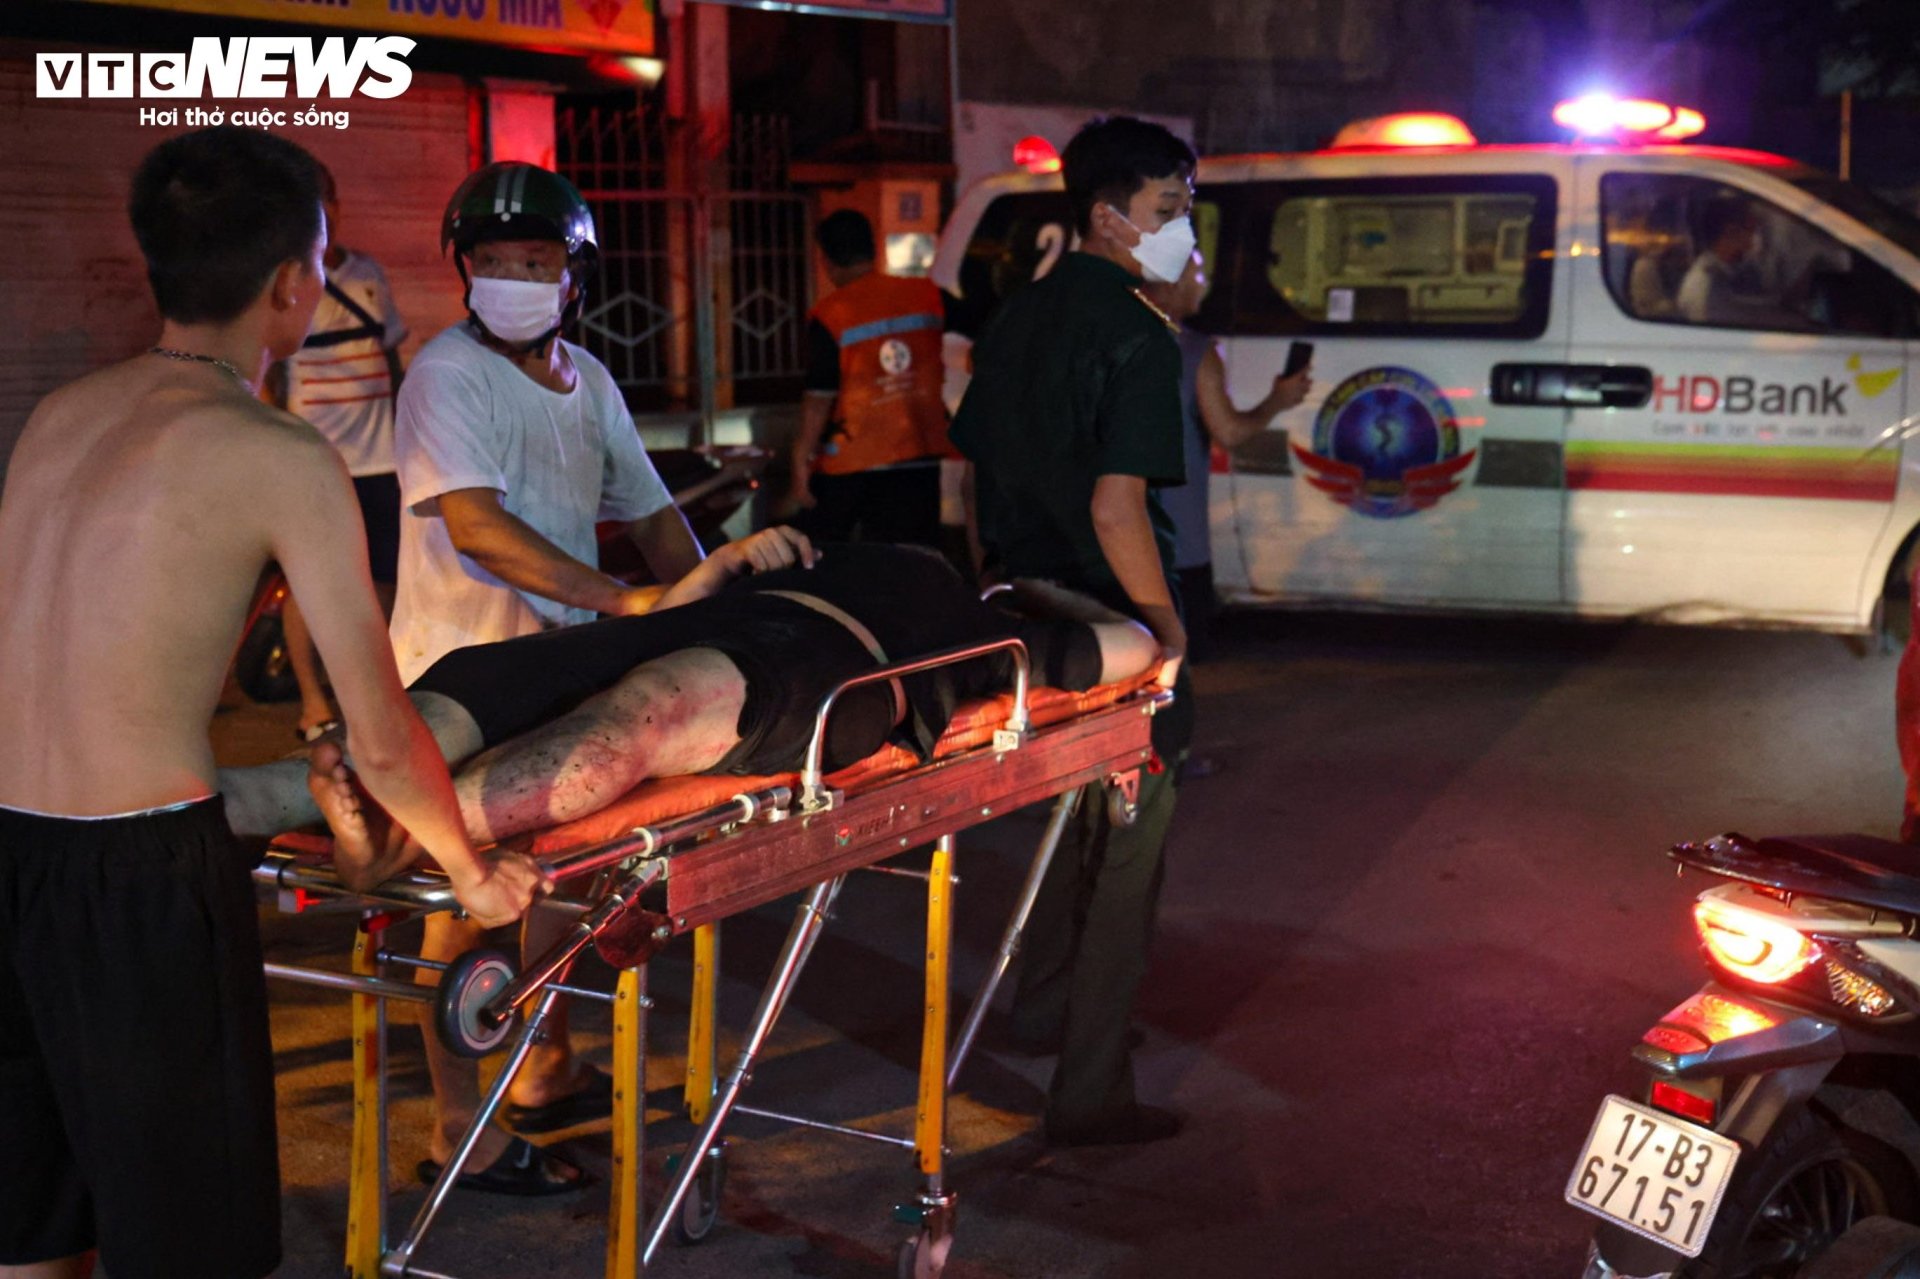 Hiện trường vụ cháy chung cư mini ở Hà Nội trong đêm, nhiều người ngất xỉu - Ảnh 10.